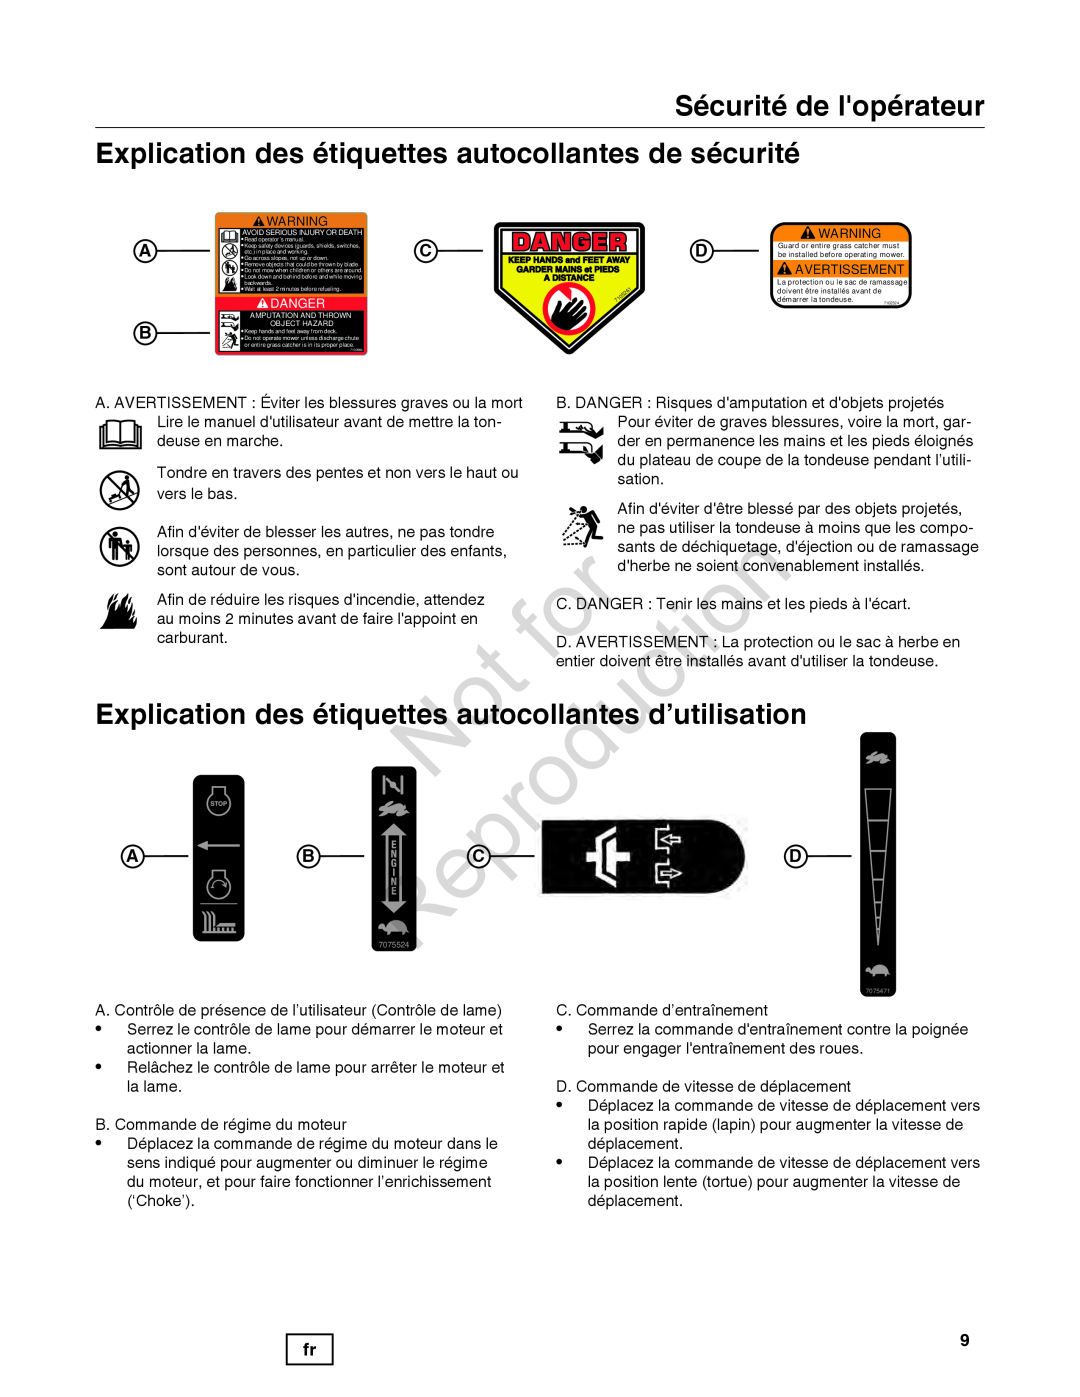 Snapper 7800849 manual Explication des étiquettes aut collantes d’utilisation, Sécurité de lopérateur 